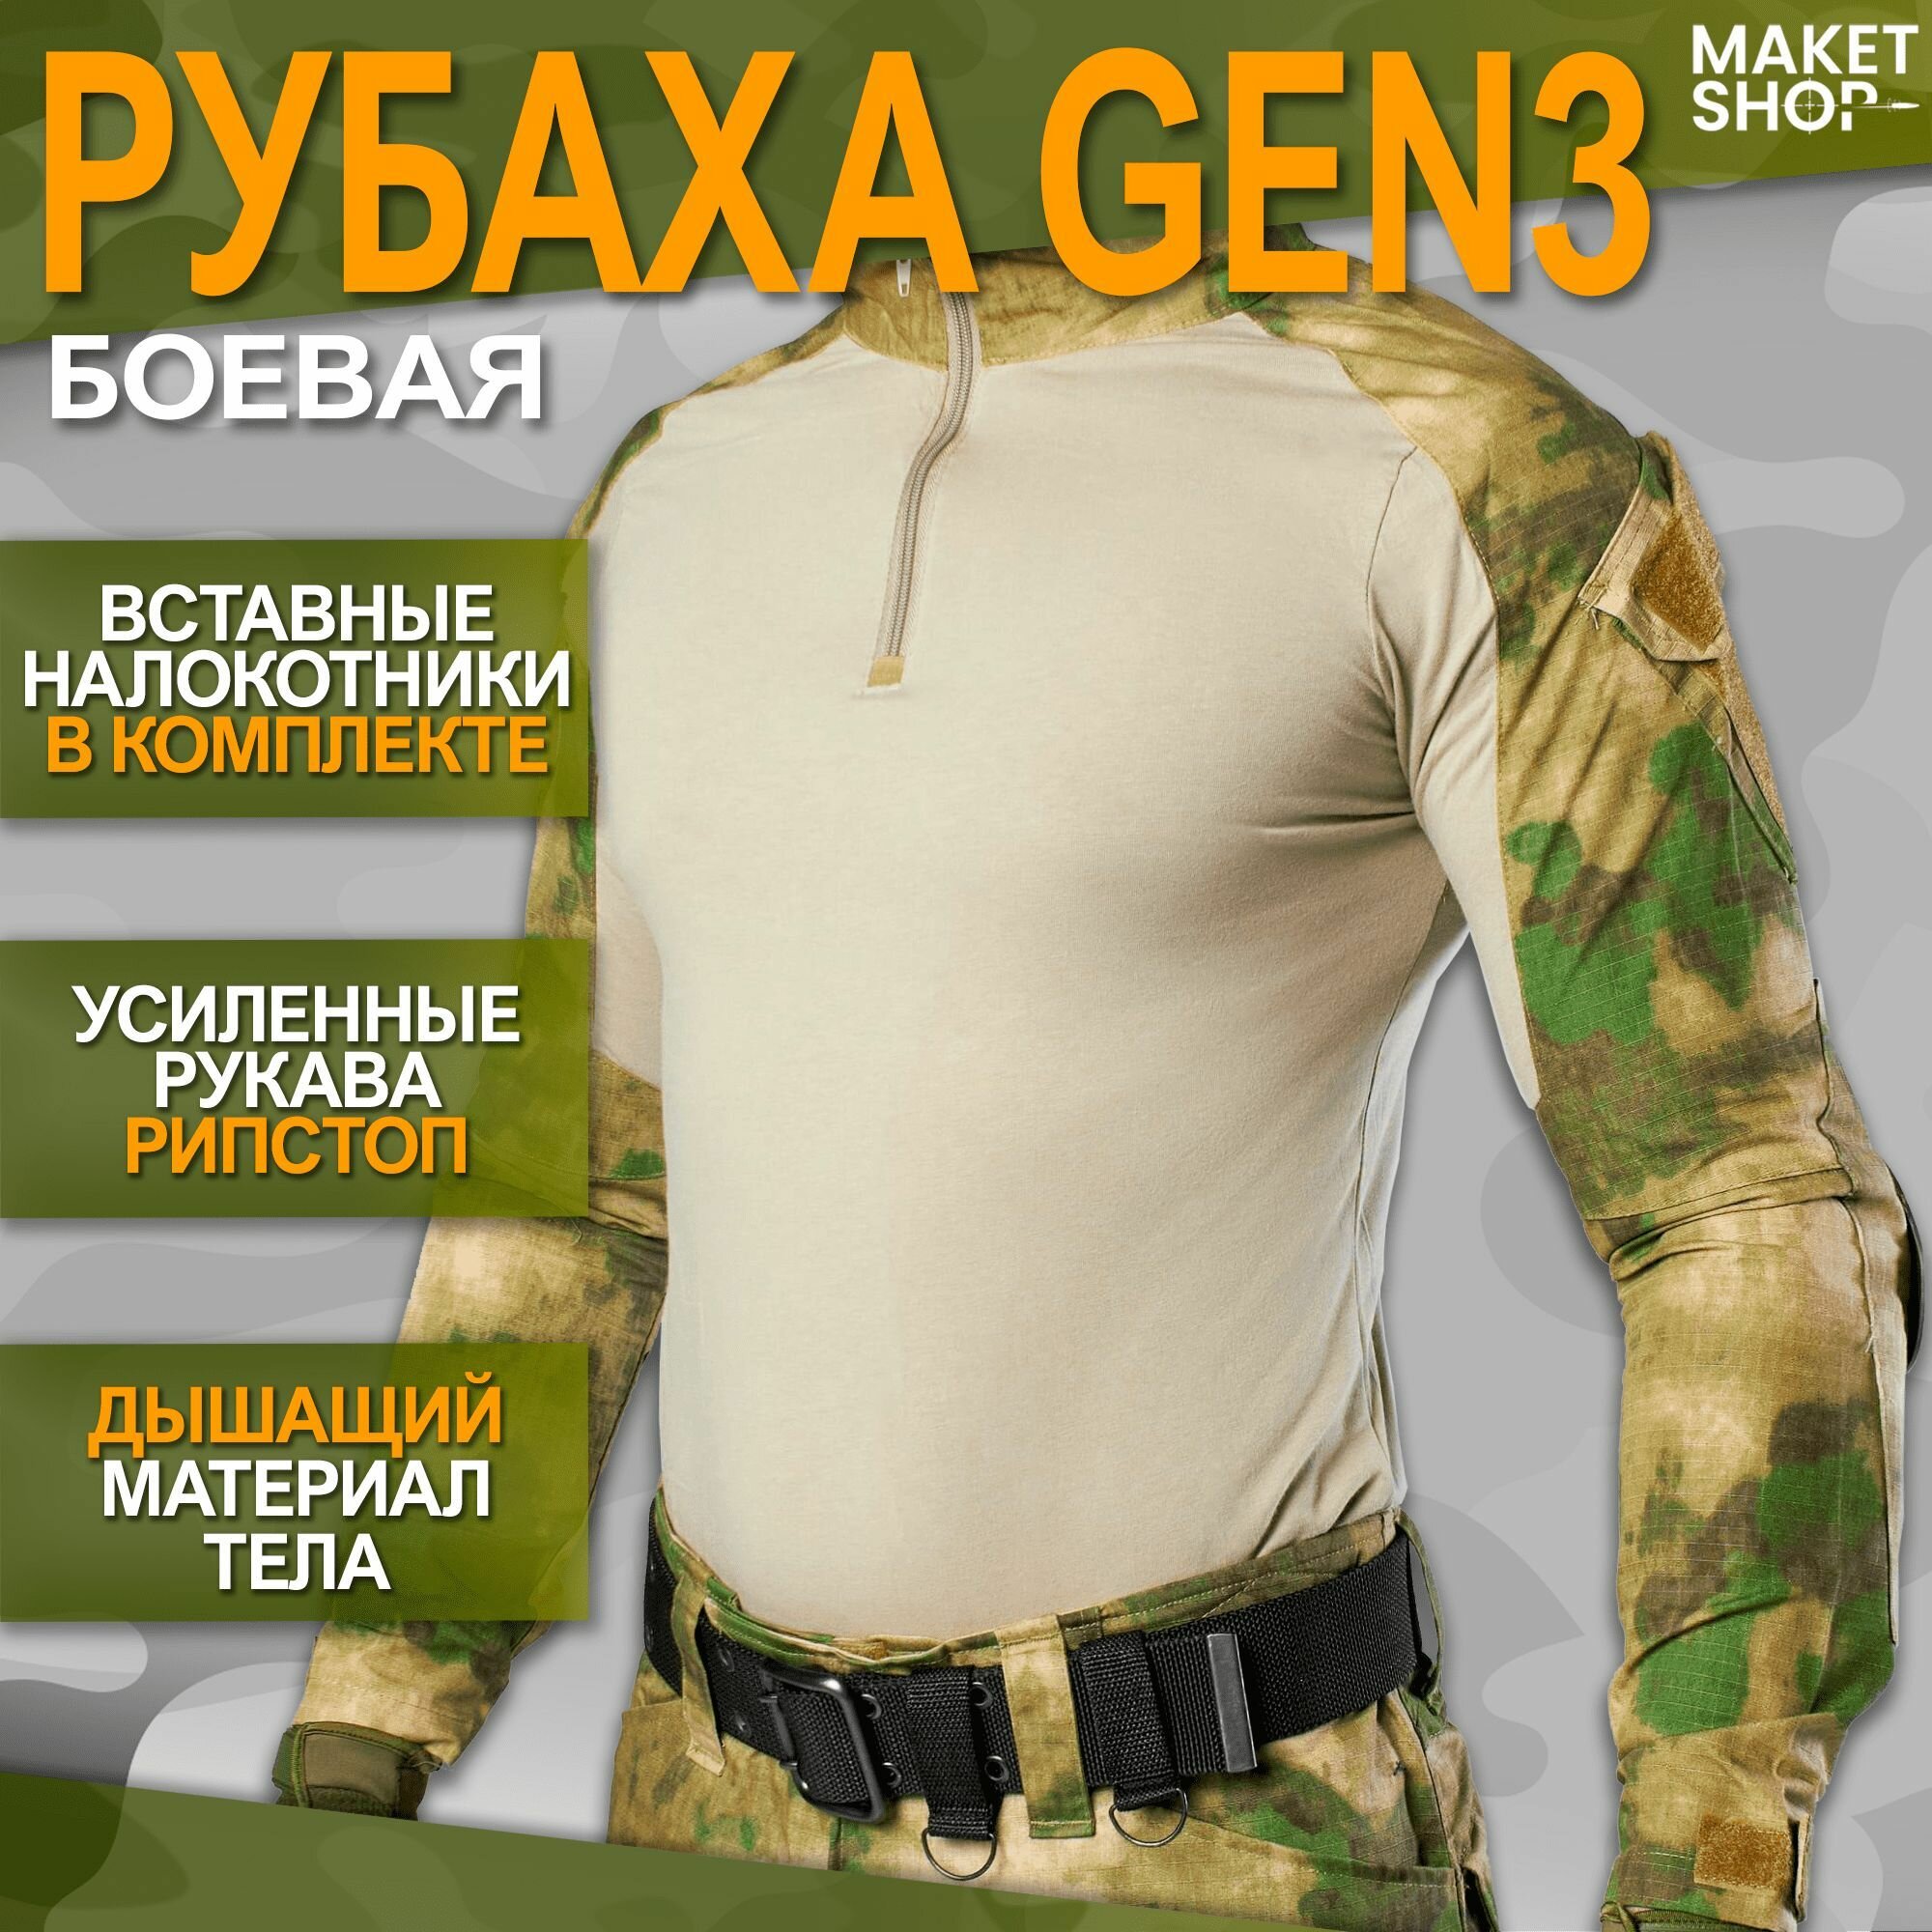 Боевая рубаха с налокотниками Gen 3